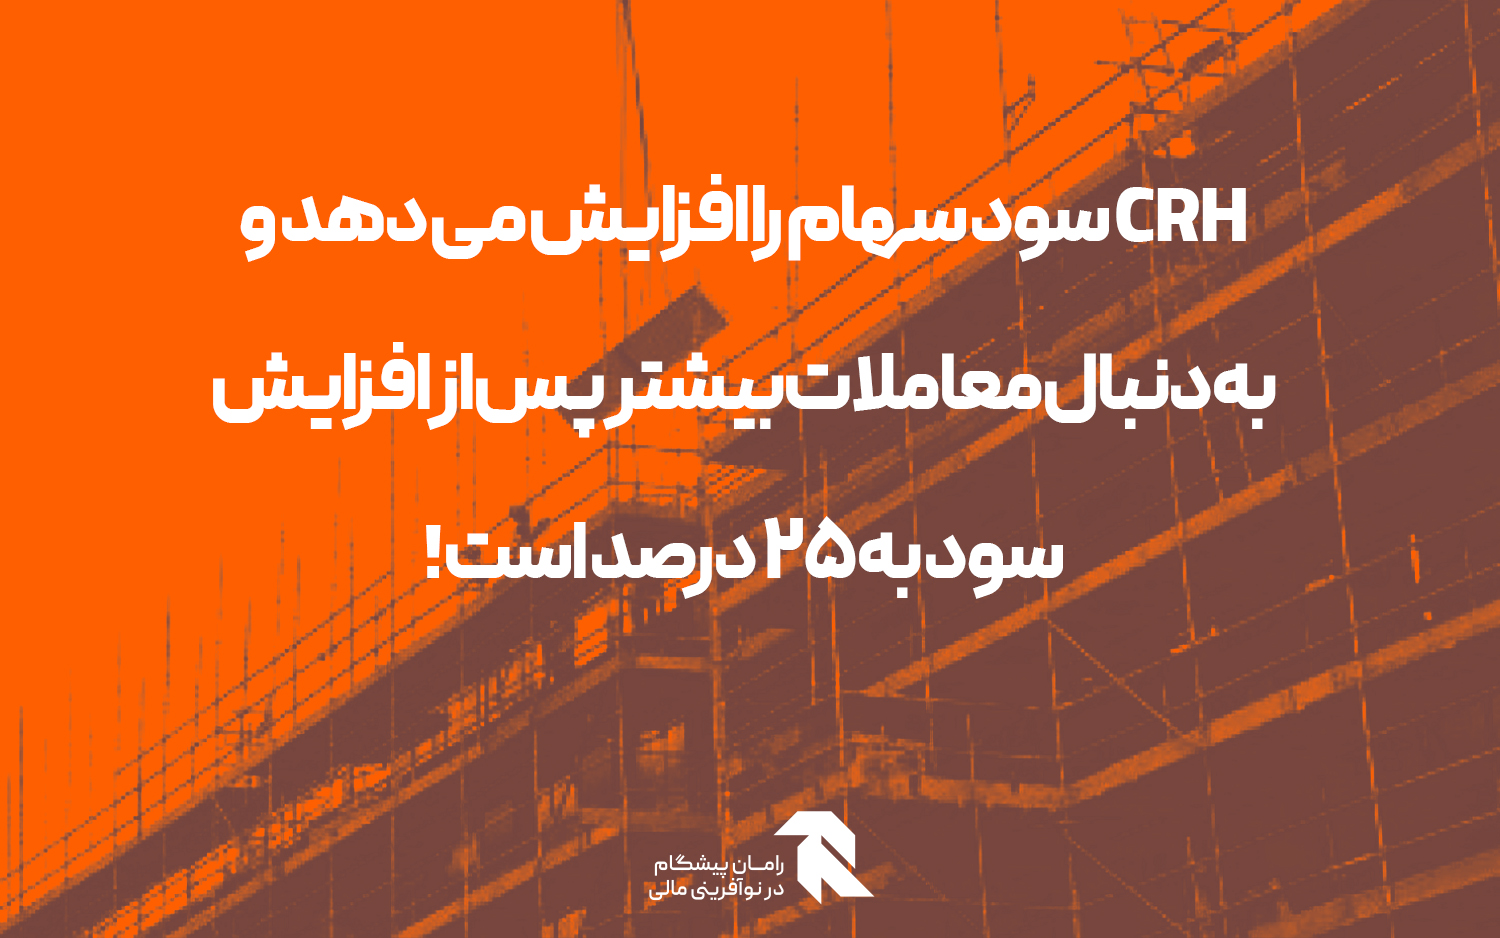 CRH سود سهام را افزایش می دهد و به دنبال معاملات بیشتر پس از افزایش سود به 25 درصد است!